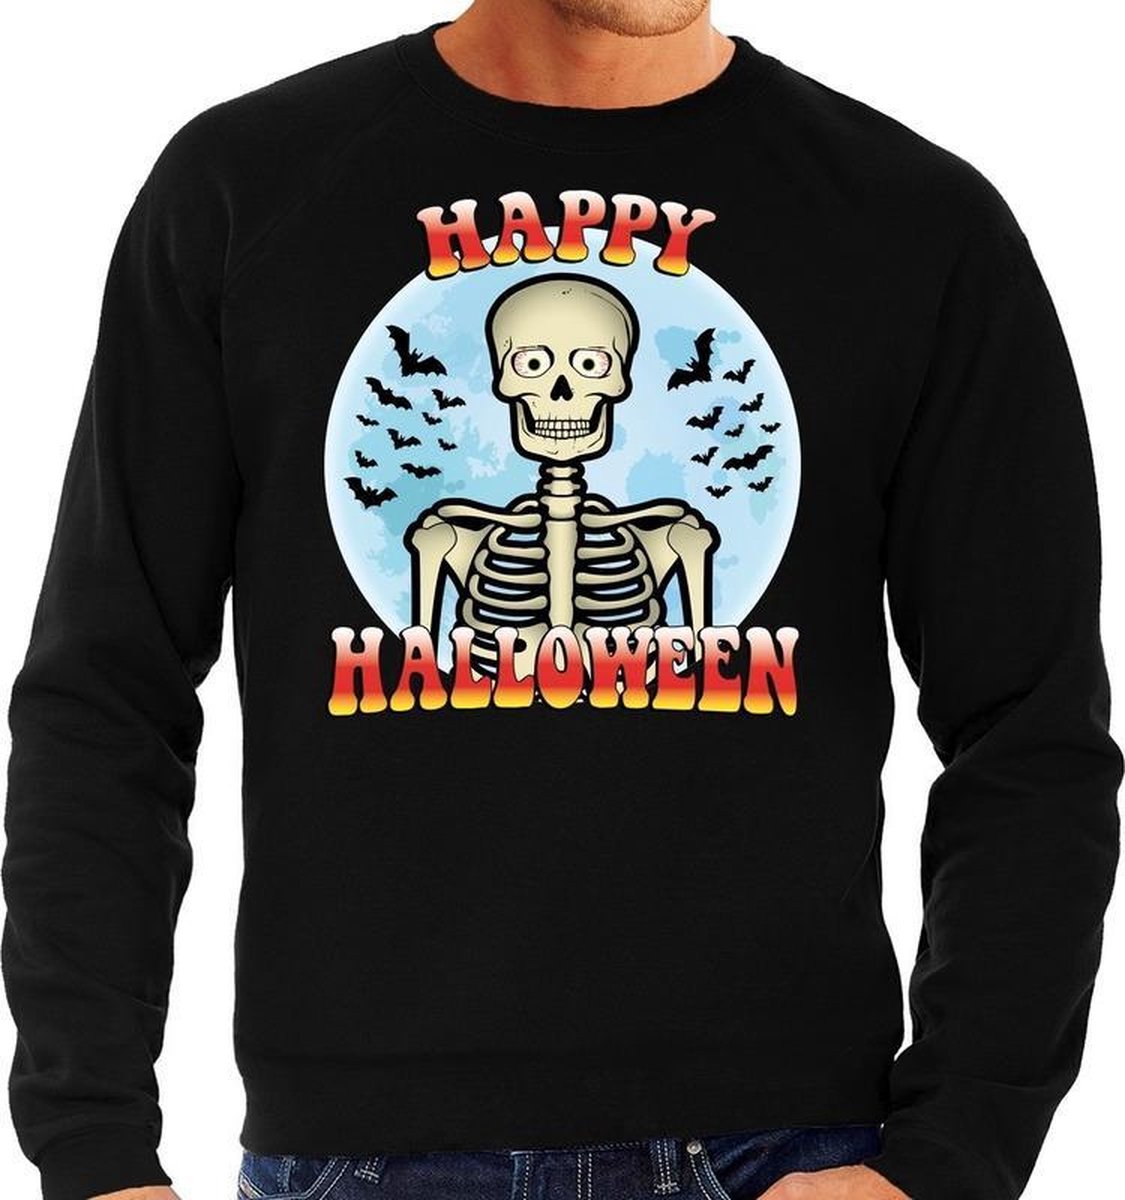 Halloween Happy Halloween skelet verkleed sweater zwart voor heren - horror skelet trui / kleding / kostuum XL